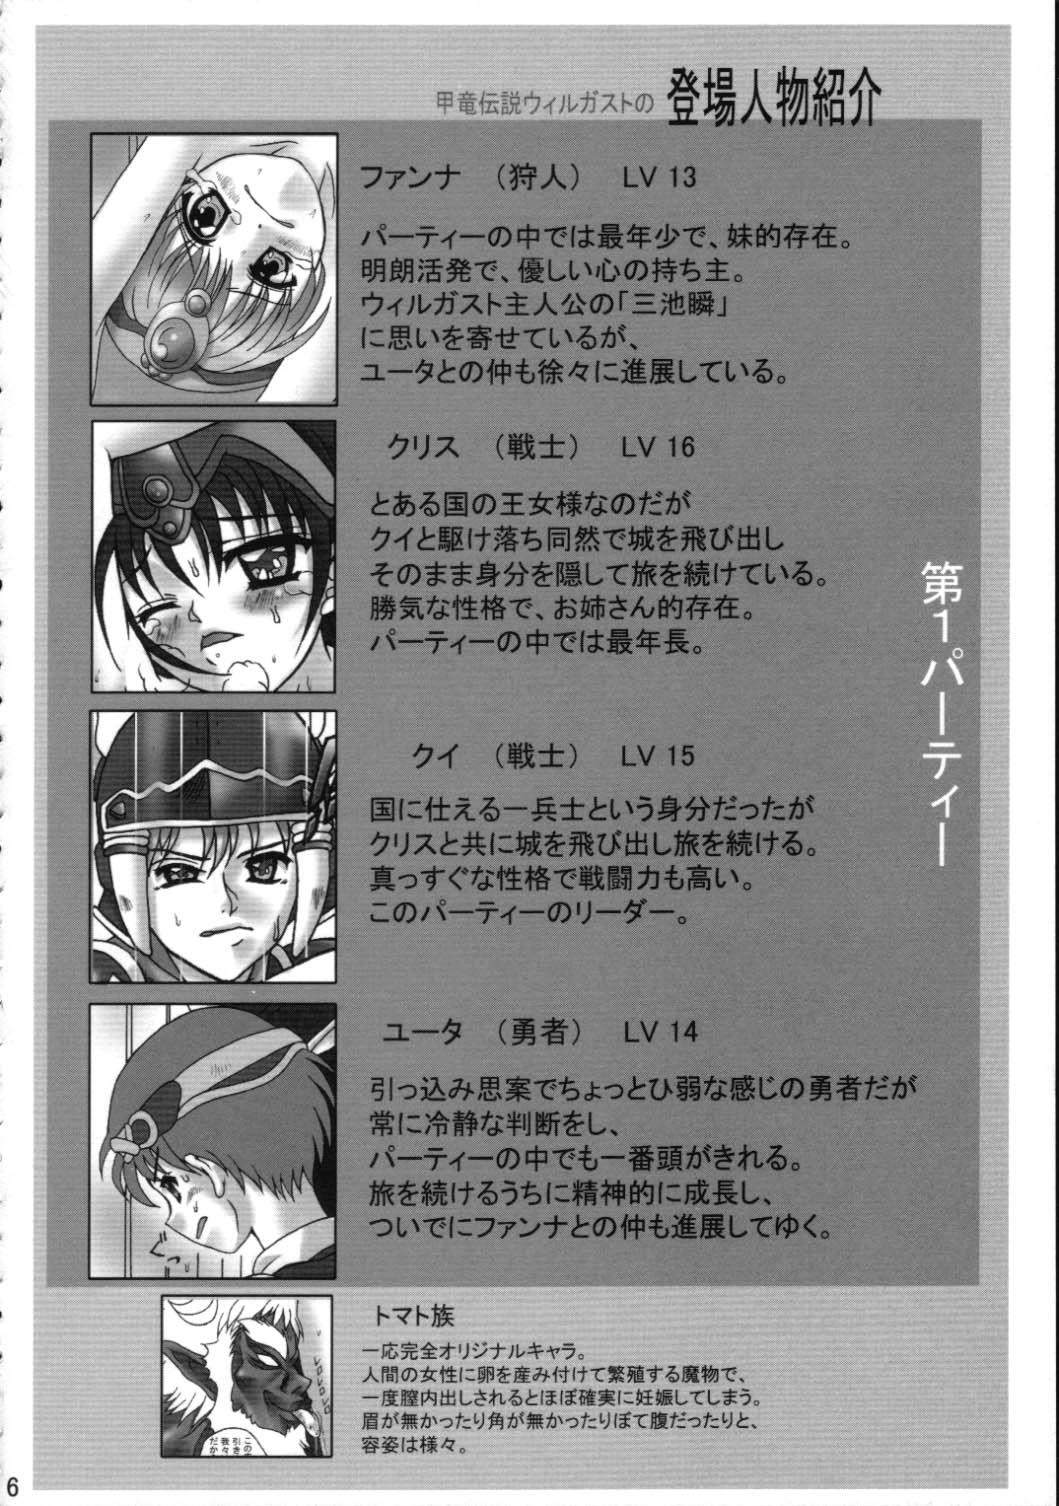 Cam Toraware no Shoujo - Kouryuu densetsu villgust Facefuck - Page 5